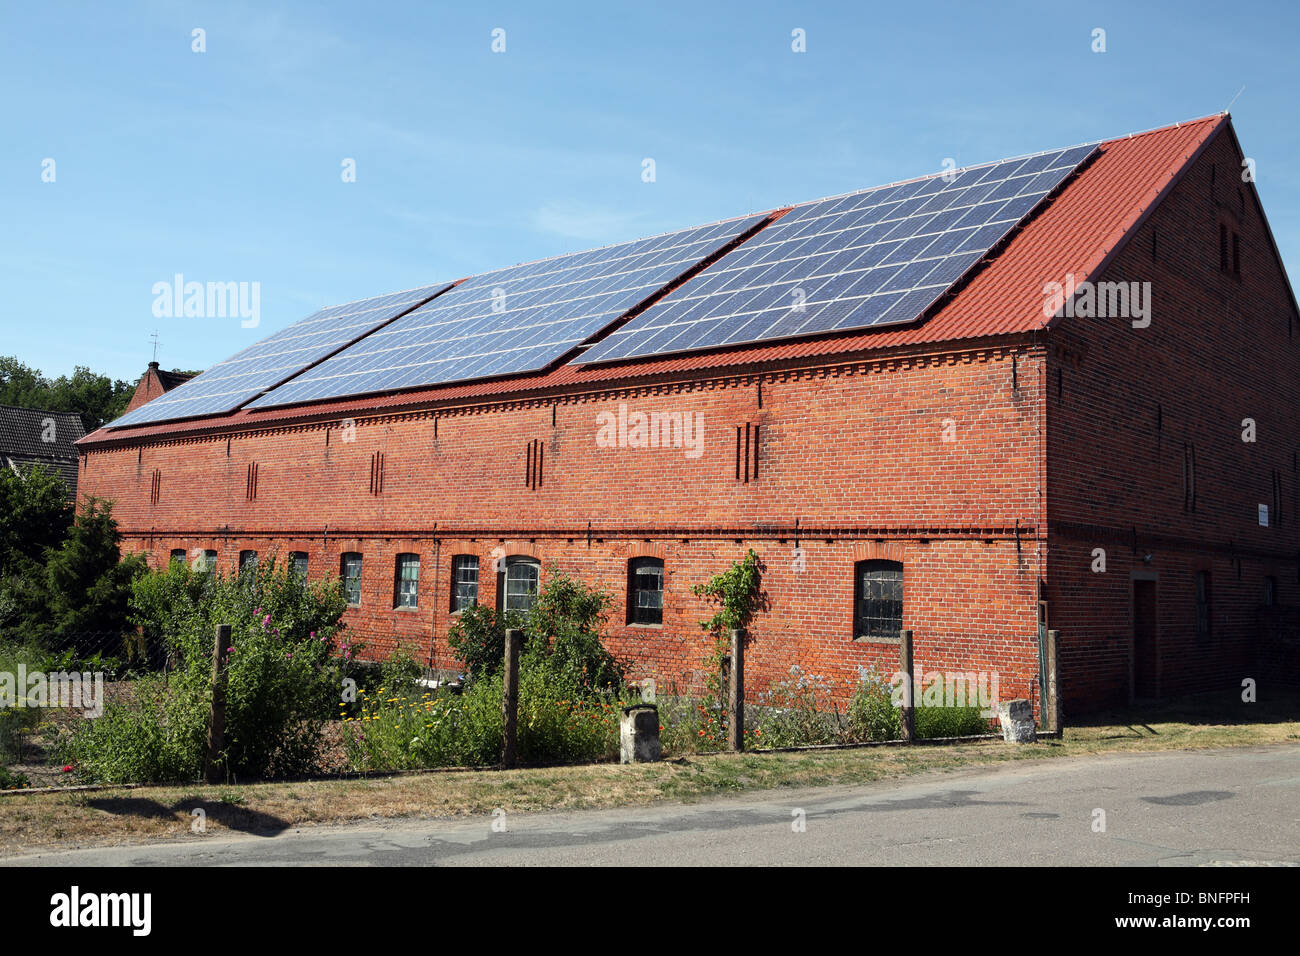 Eine Scheune, deren Dach mit Photovoltaik oder Sonnenkollektoren zur Stromerzeugung innerhalb des Dorfes Bälow, Deutschlands bedeckt ist. Stockfoto